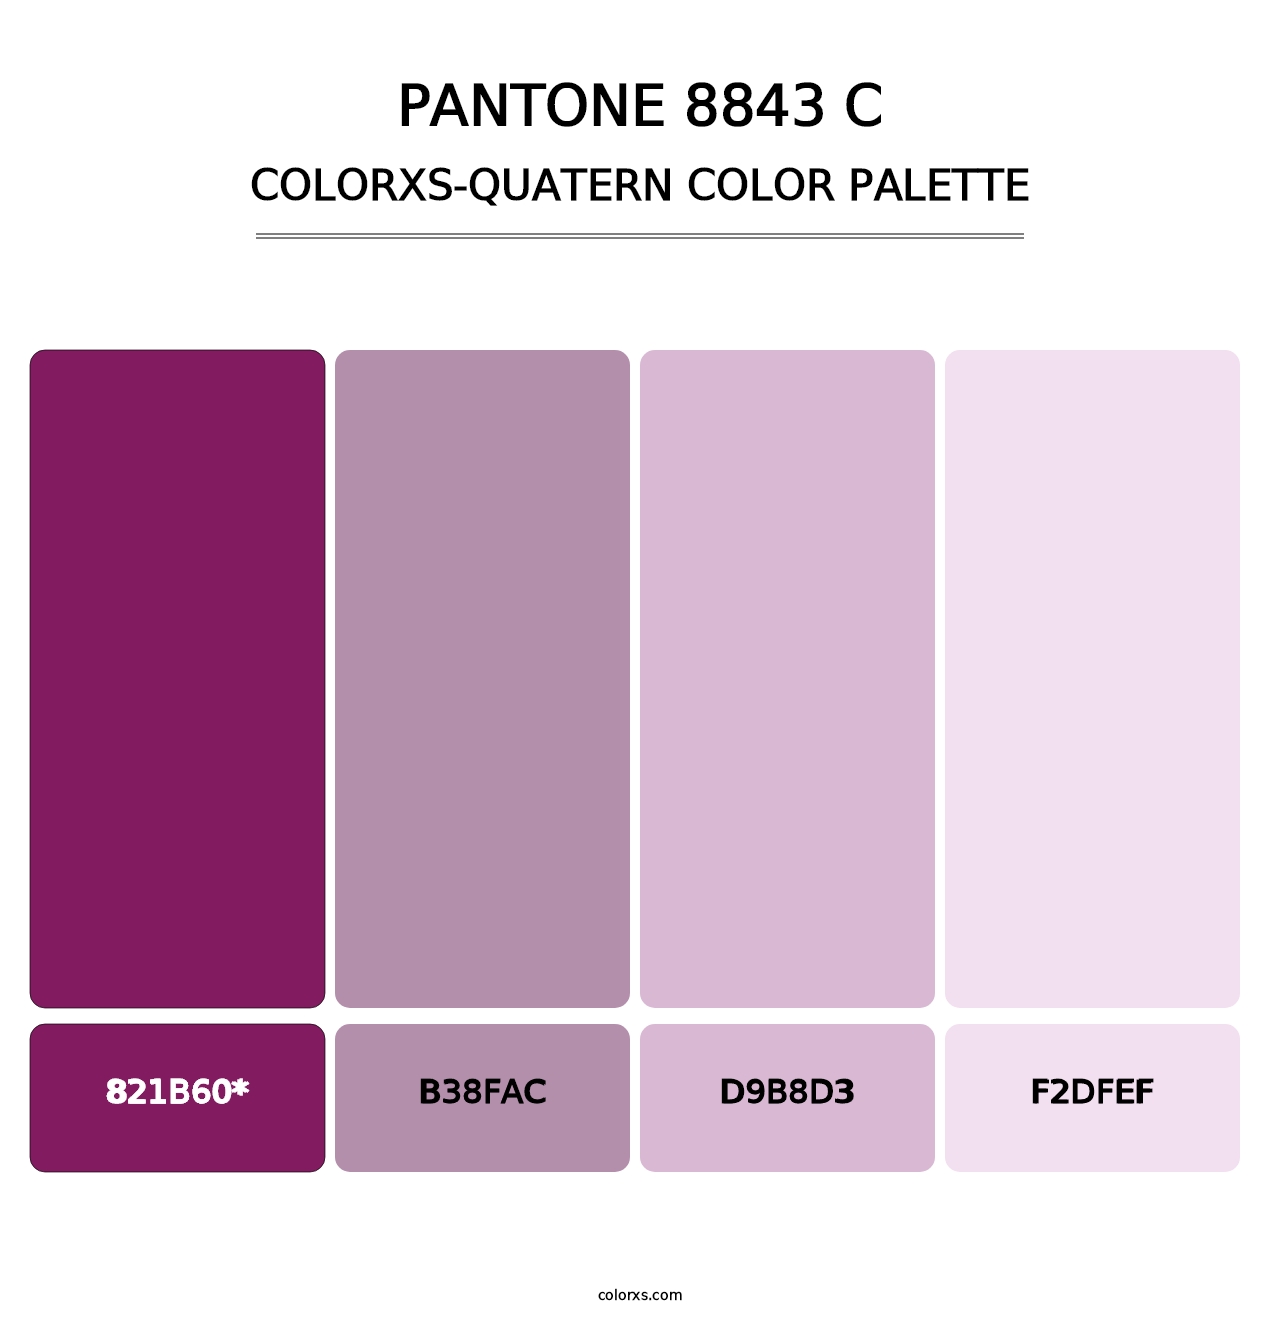 PANTONE 8843 C - Colorxs Quatern Palette